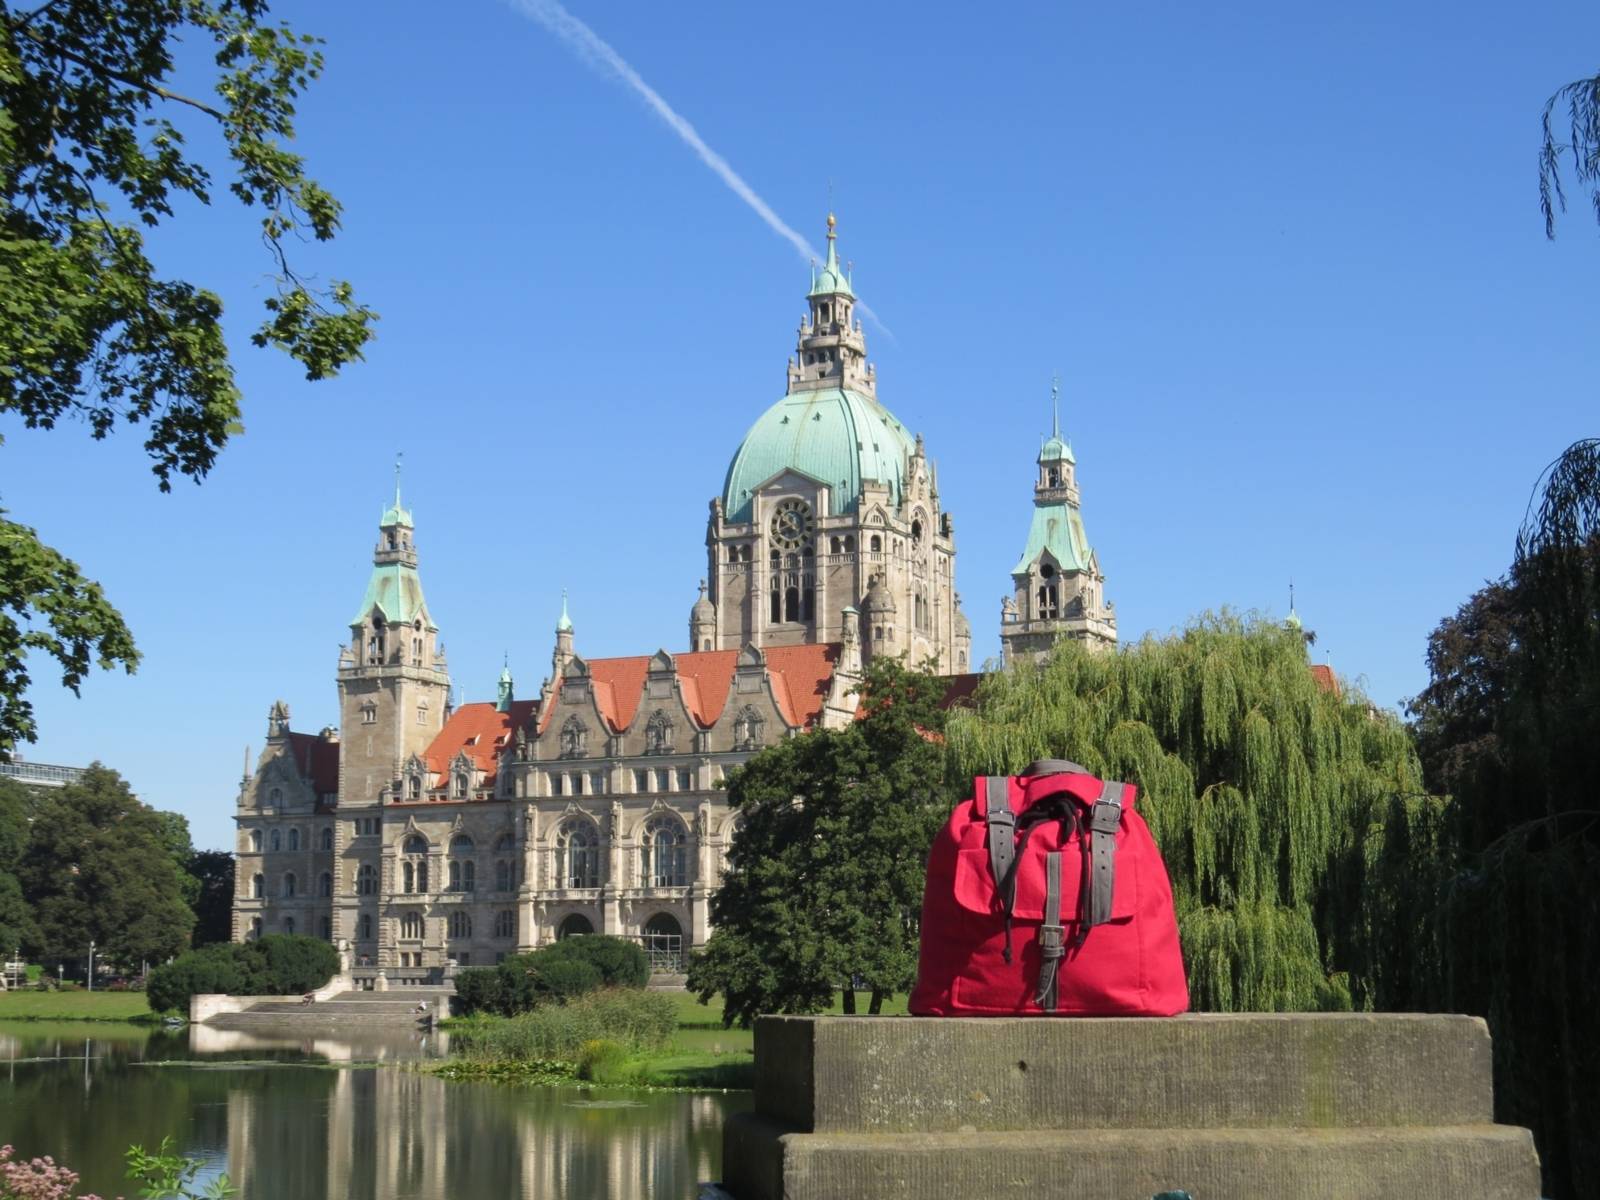 Das neue Rathaus in Hannover, Foto aufgenommen aus Richtung des Maschparks. Im Vordergrund steht ein roter Rucksack.